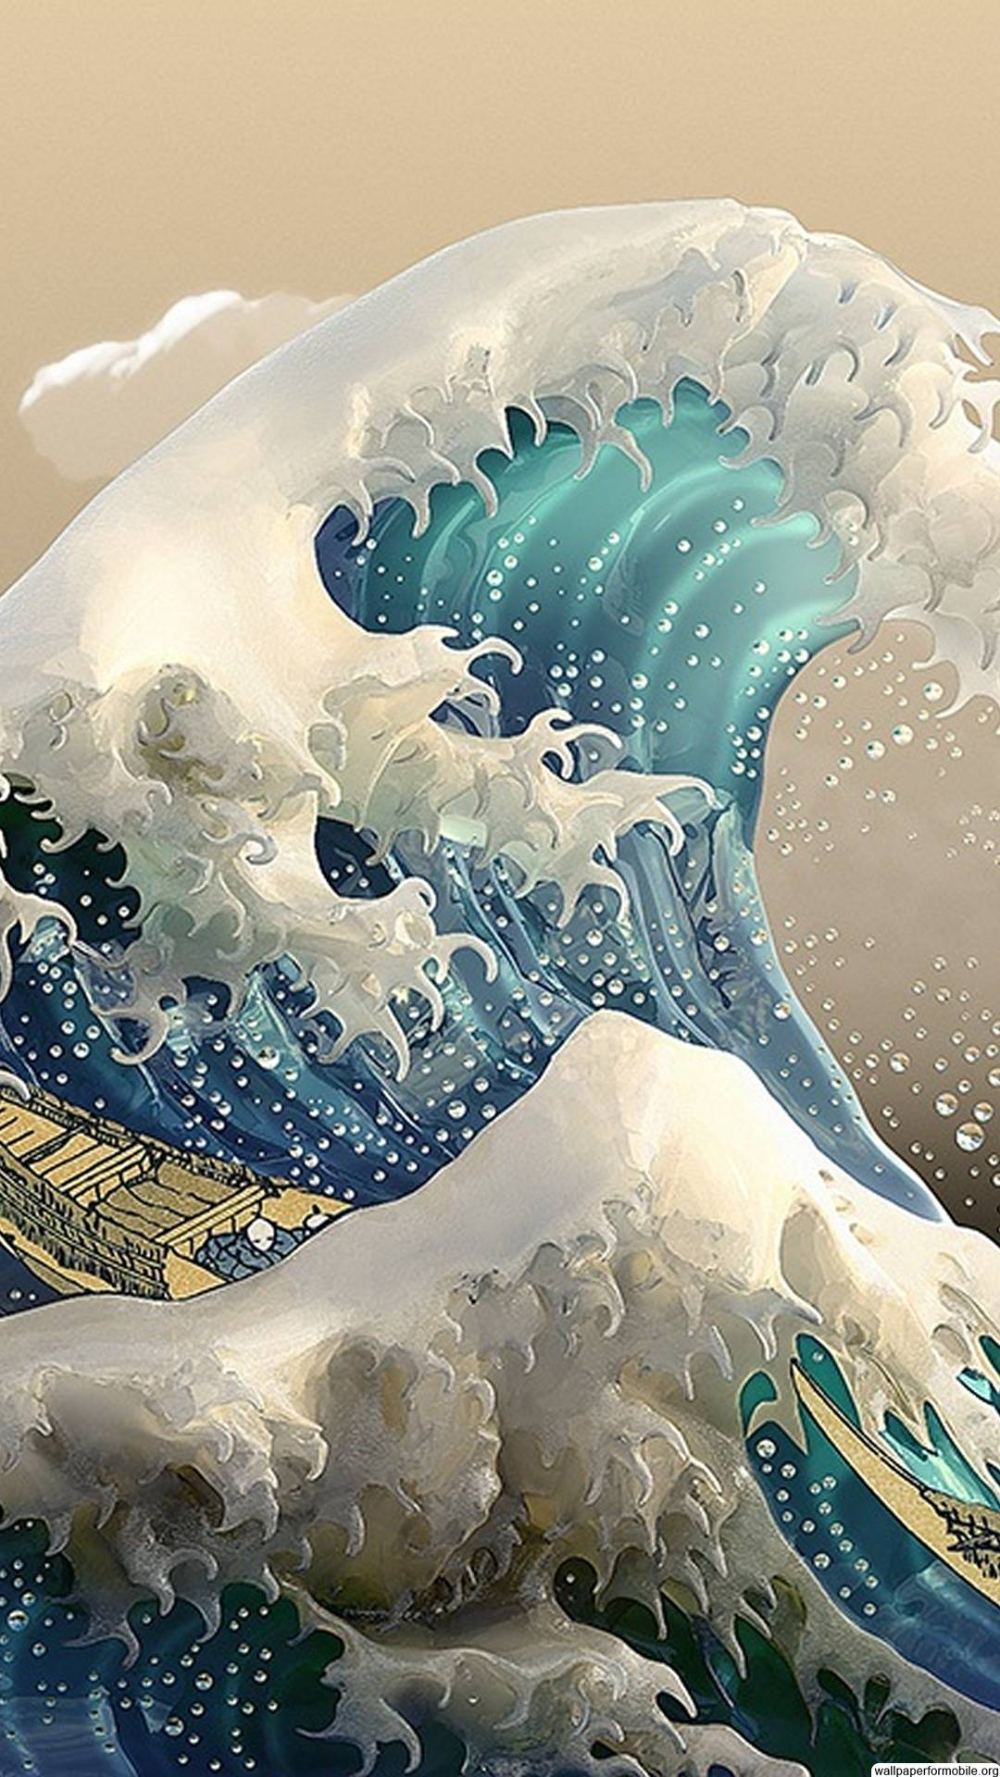 The Great Wave Off Kanagawa Wallpaper. Waves wallpaper iphone, Art wallpaper iphone, Waves wallpaper